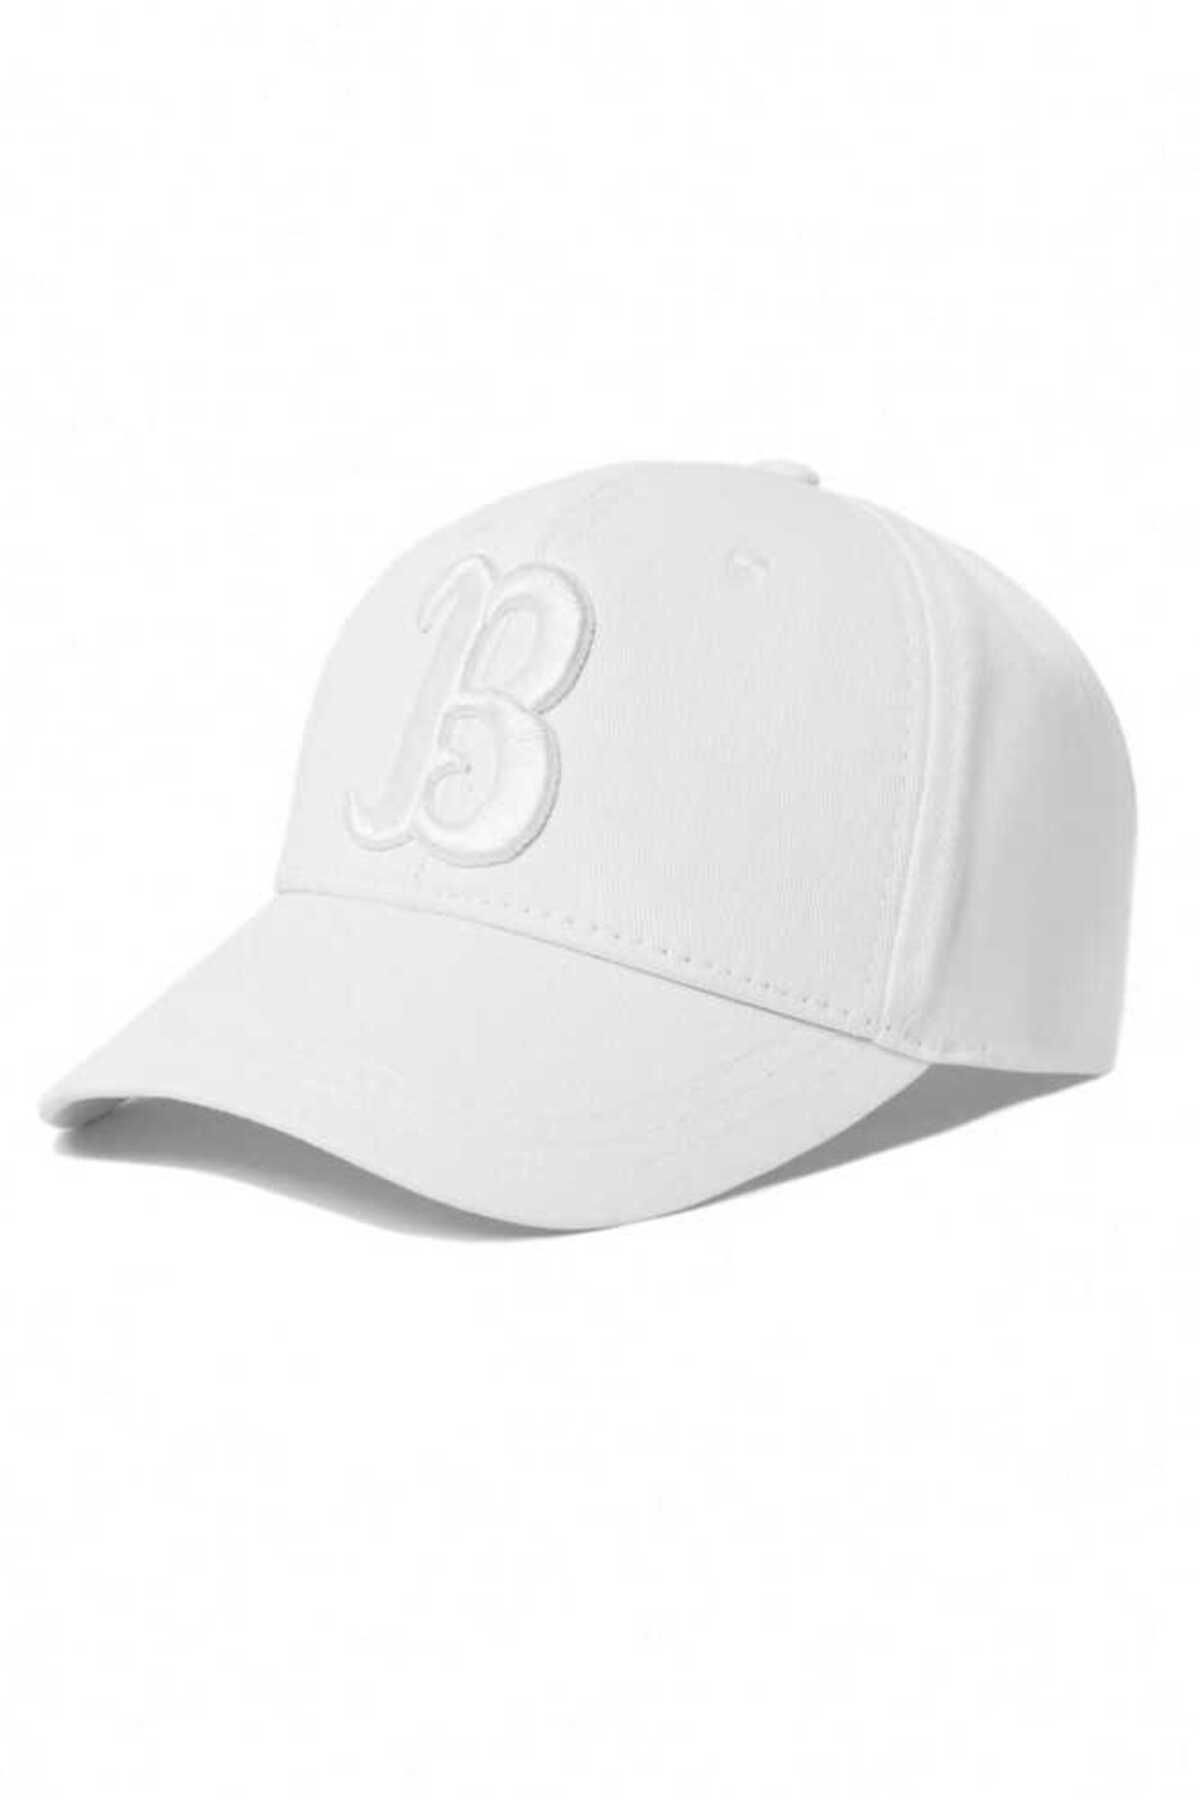 Ucla Pasedena Beyaz Baseball Cap Nakışlı Unisex Şapka